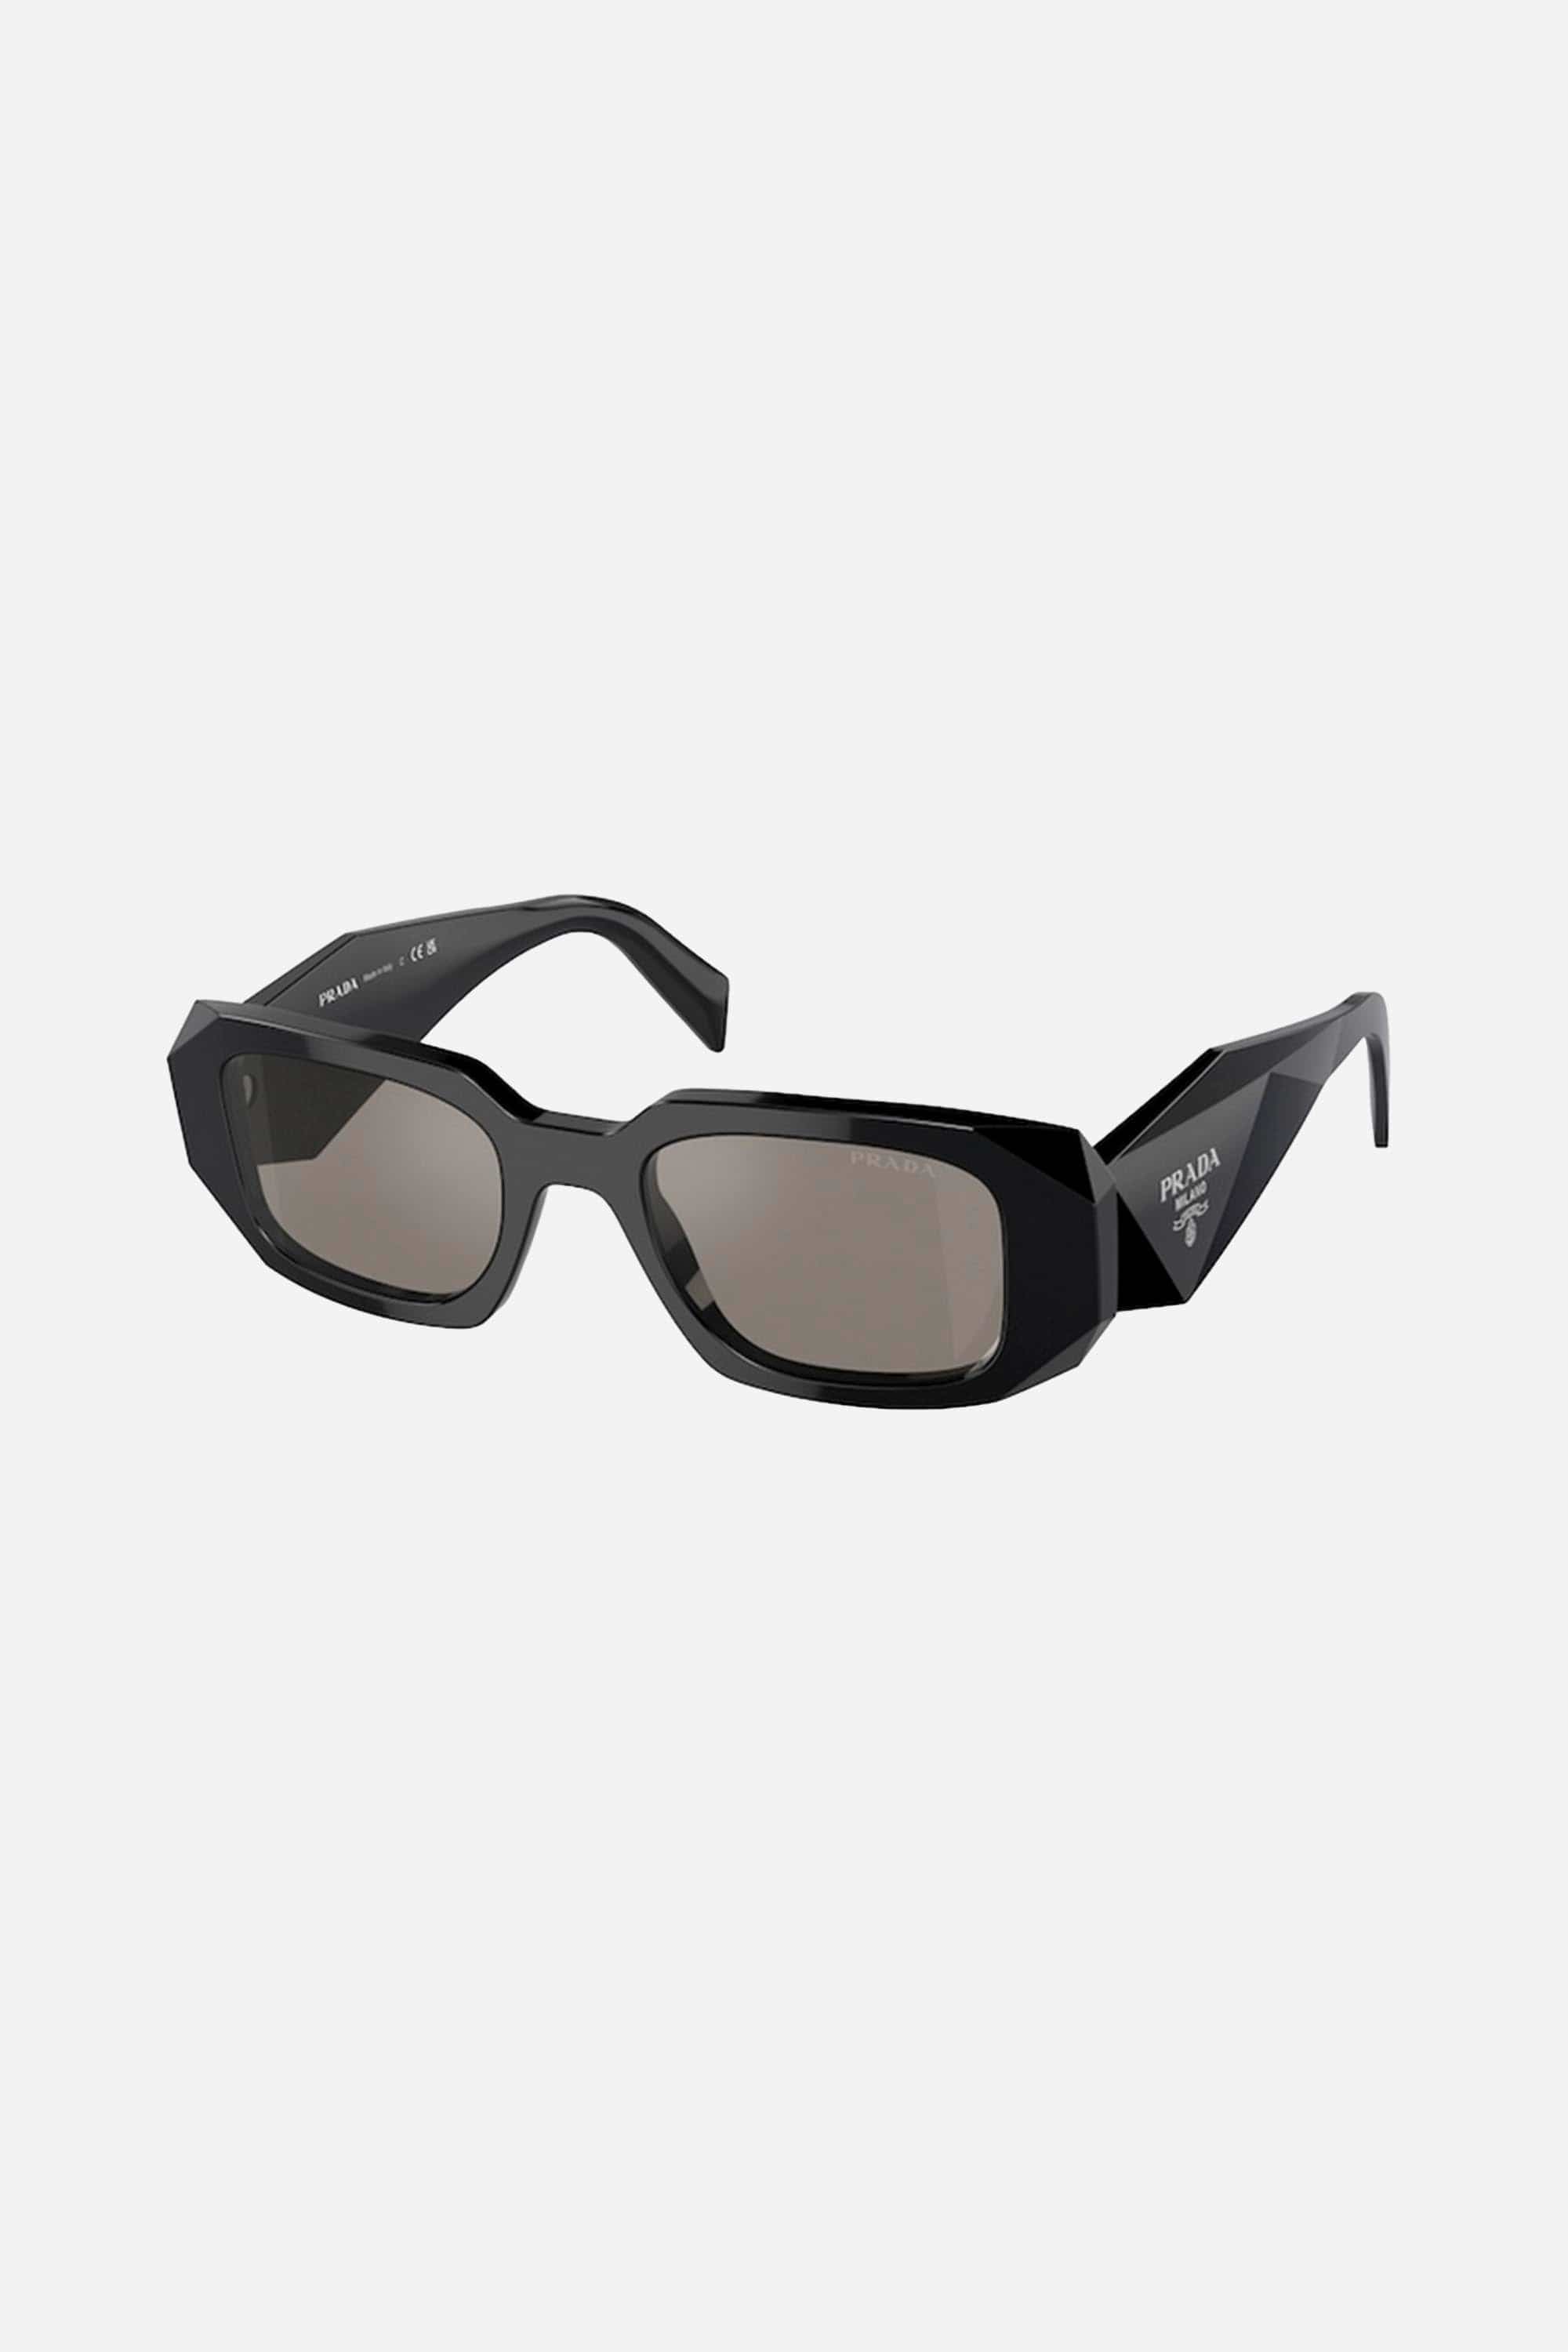 Prada PR17WS symbol black and silver oval sunglasses - Eyewear Club